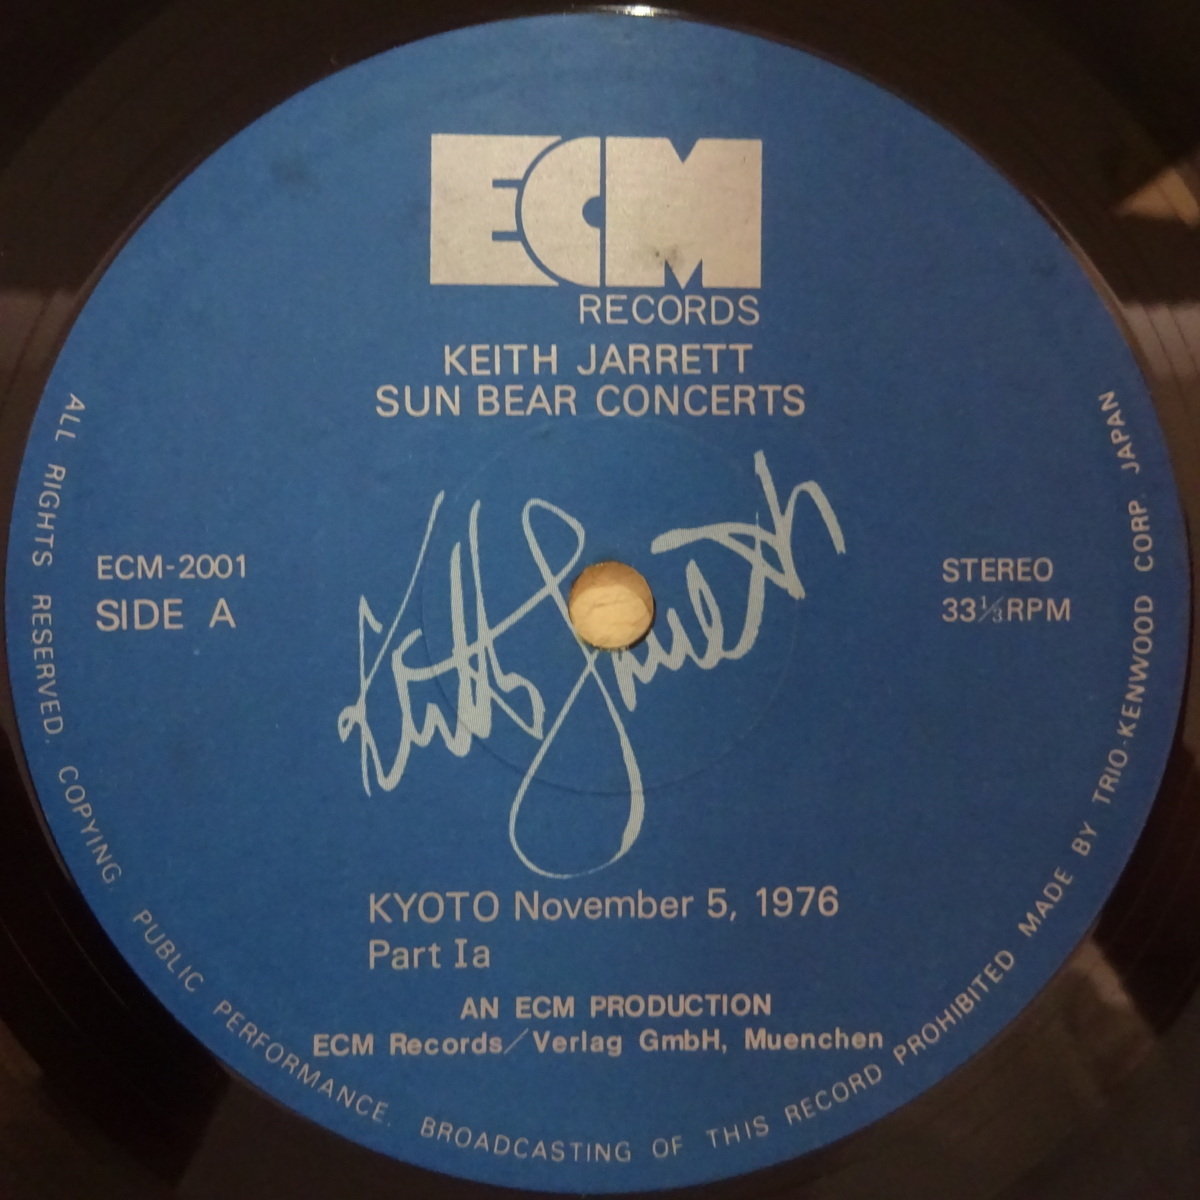 13065018 【稀少帯付/10LPボックスセット】キース・ジャレット Keith Jarrett / サンベア・コンサート Sun Bear  Concerts